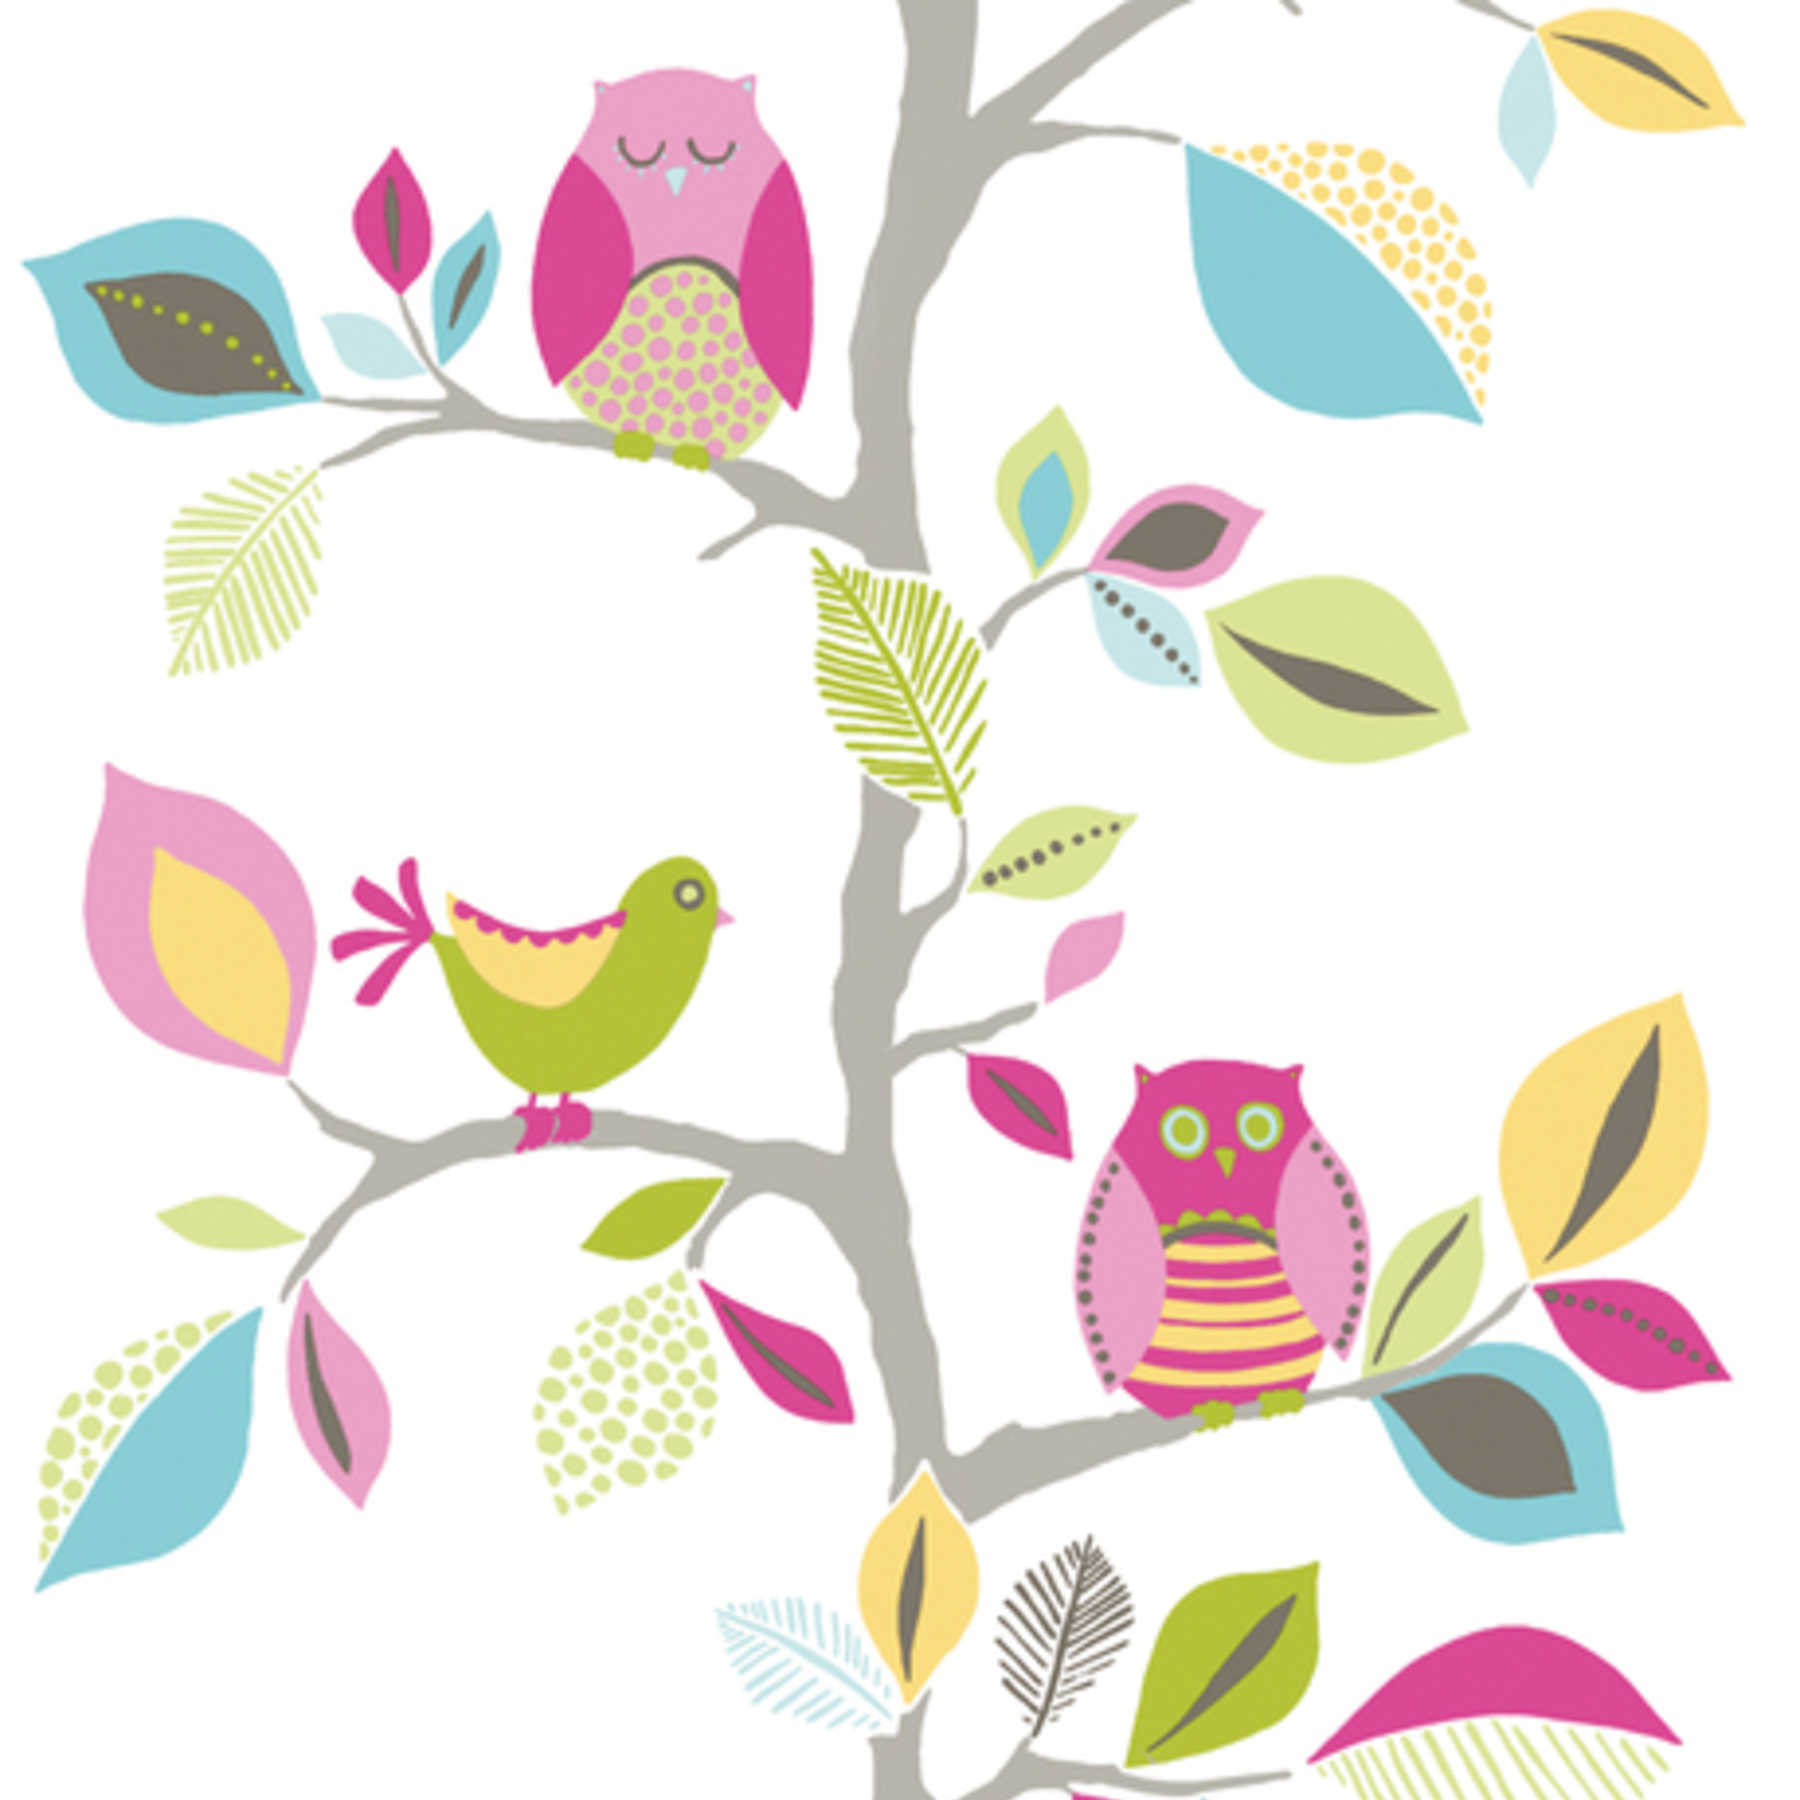             Tapete Eulen Muster mit Blättern & Vögeln für Kinderzimmer – Bunt
        